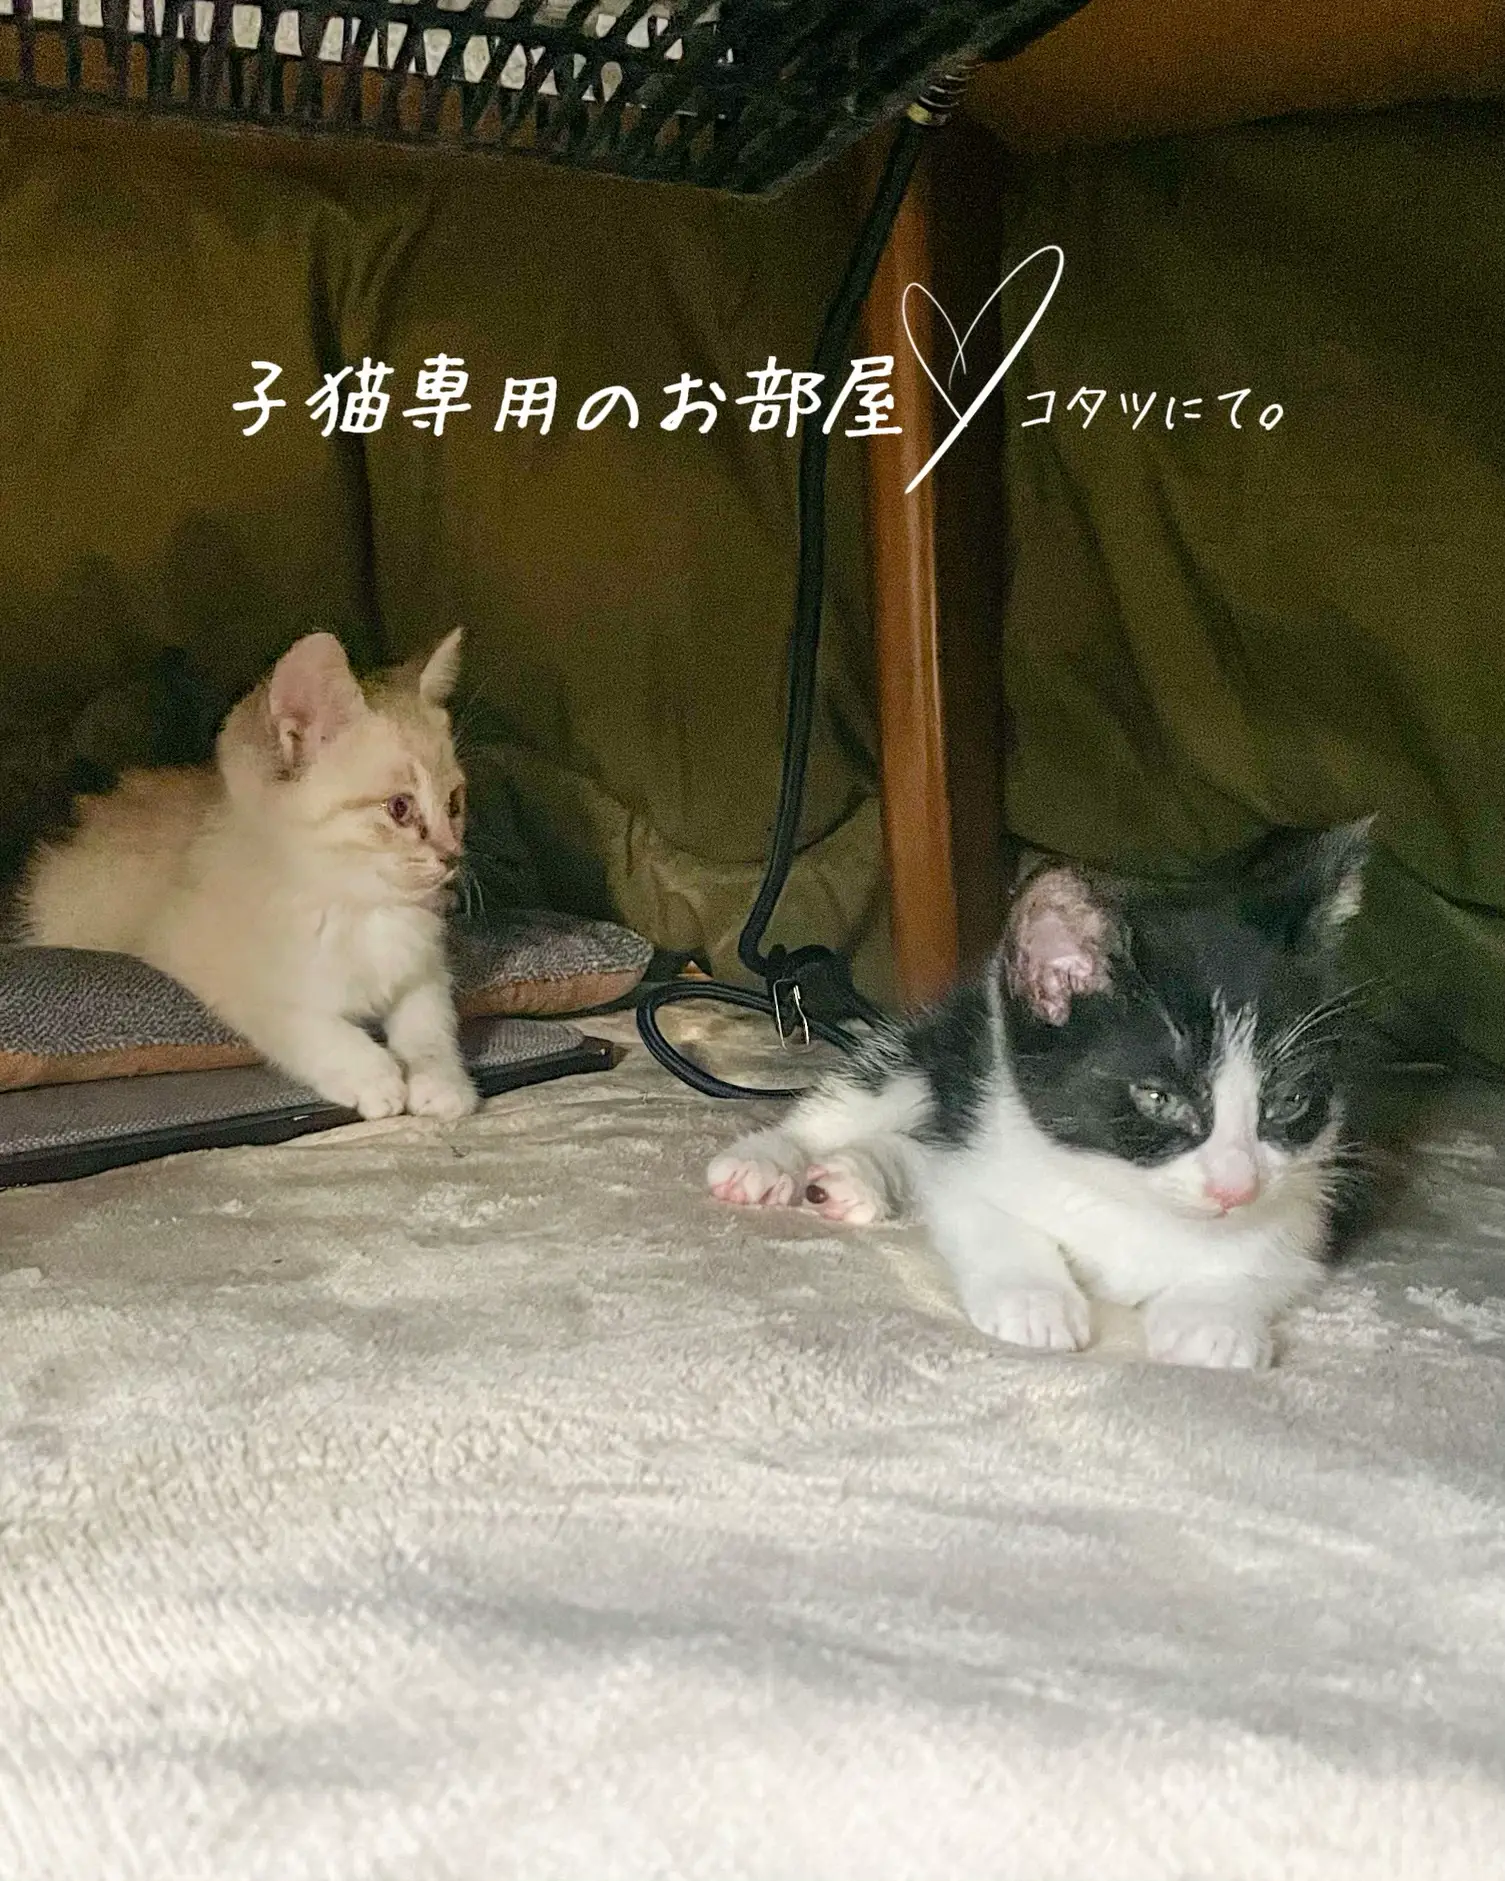 滋賀の新店-ネコがいるカフェ(/・ω・)/にゃー! neko+cafe ニコノシッポ